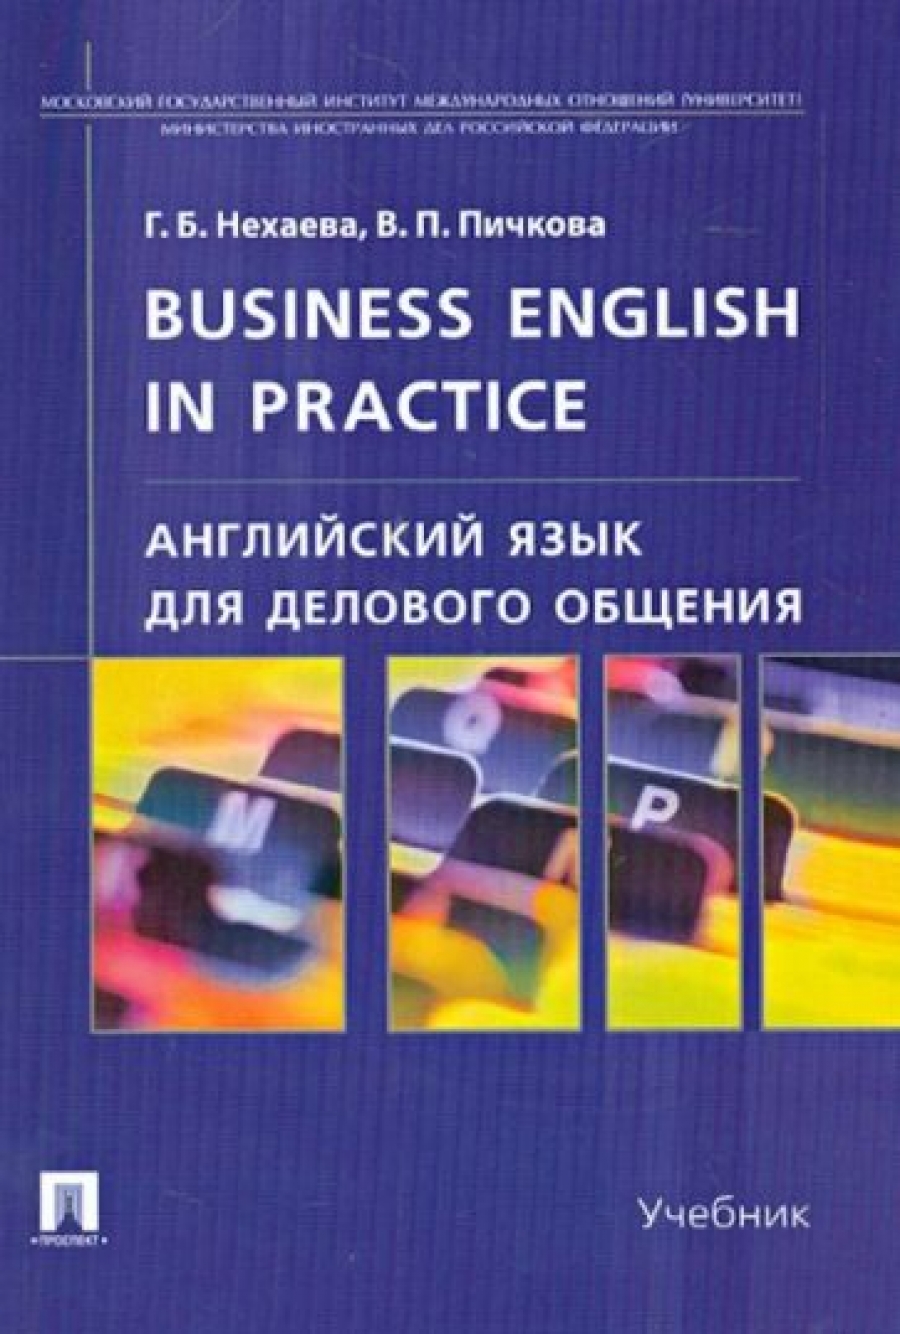 Нехаева Г.Б., Пичкова В.П. - Английский язык для делового общения / Business English in practice 